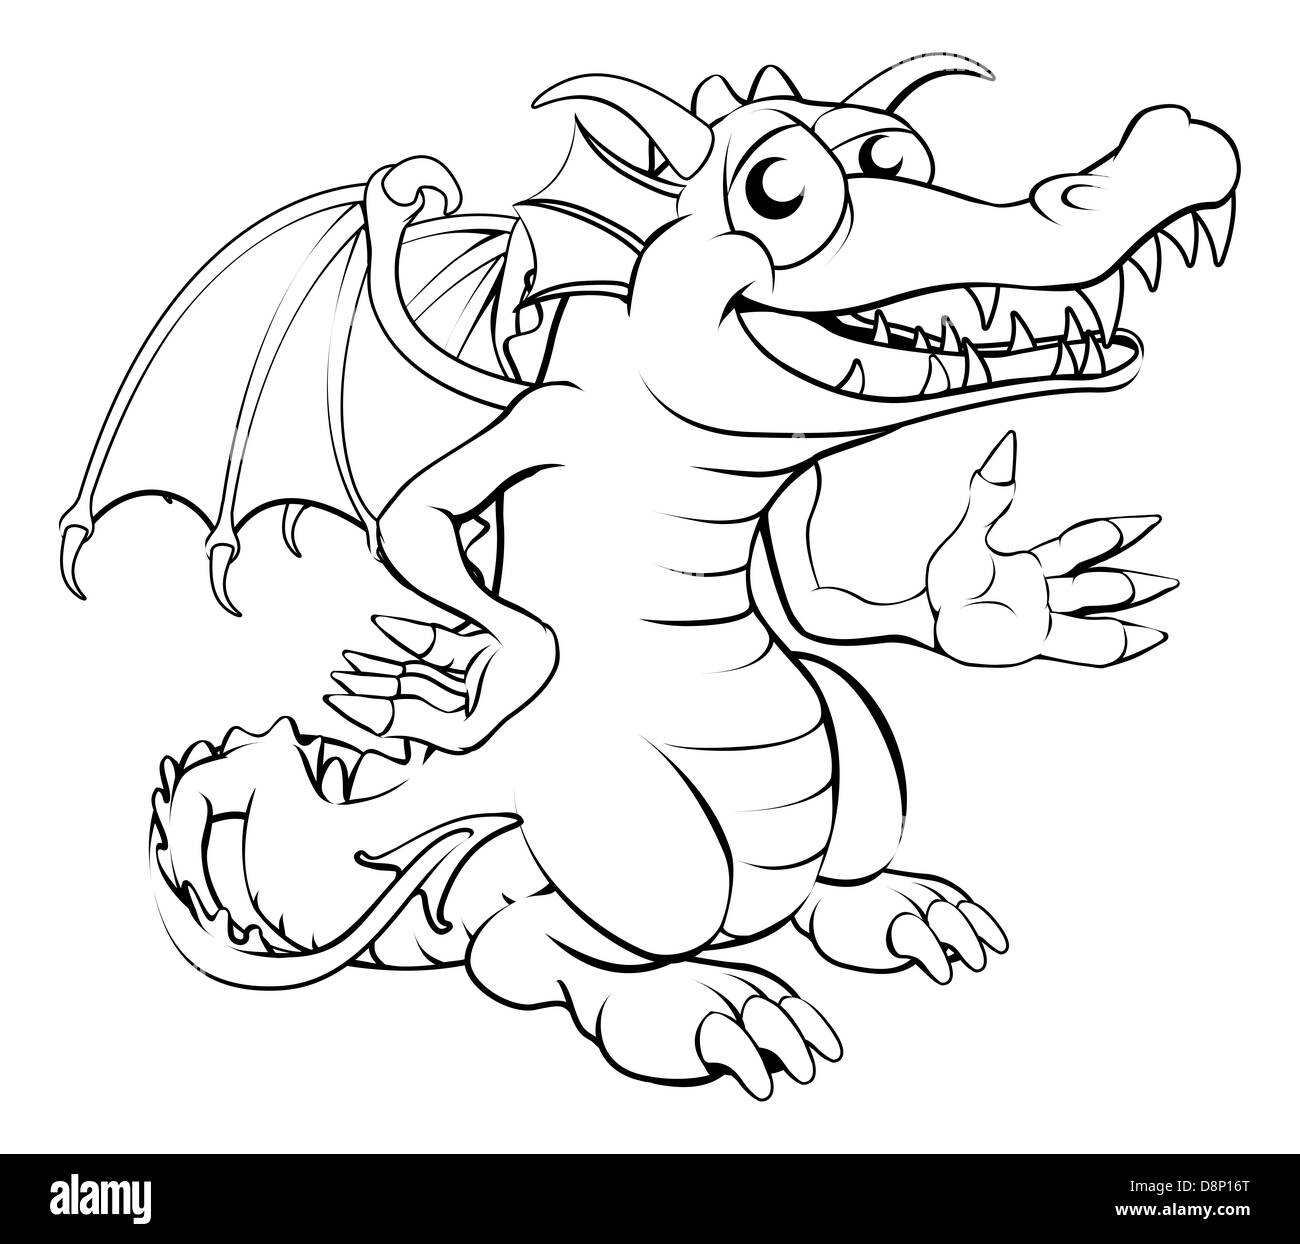 Illustration noir et blanc d'un dessin animé dragon heureux Banque D'Images